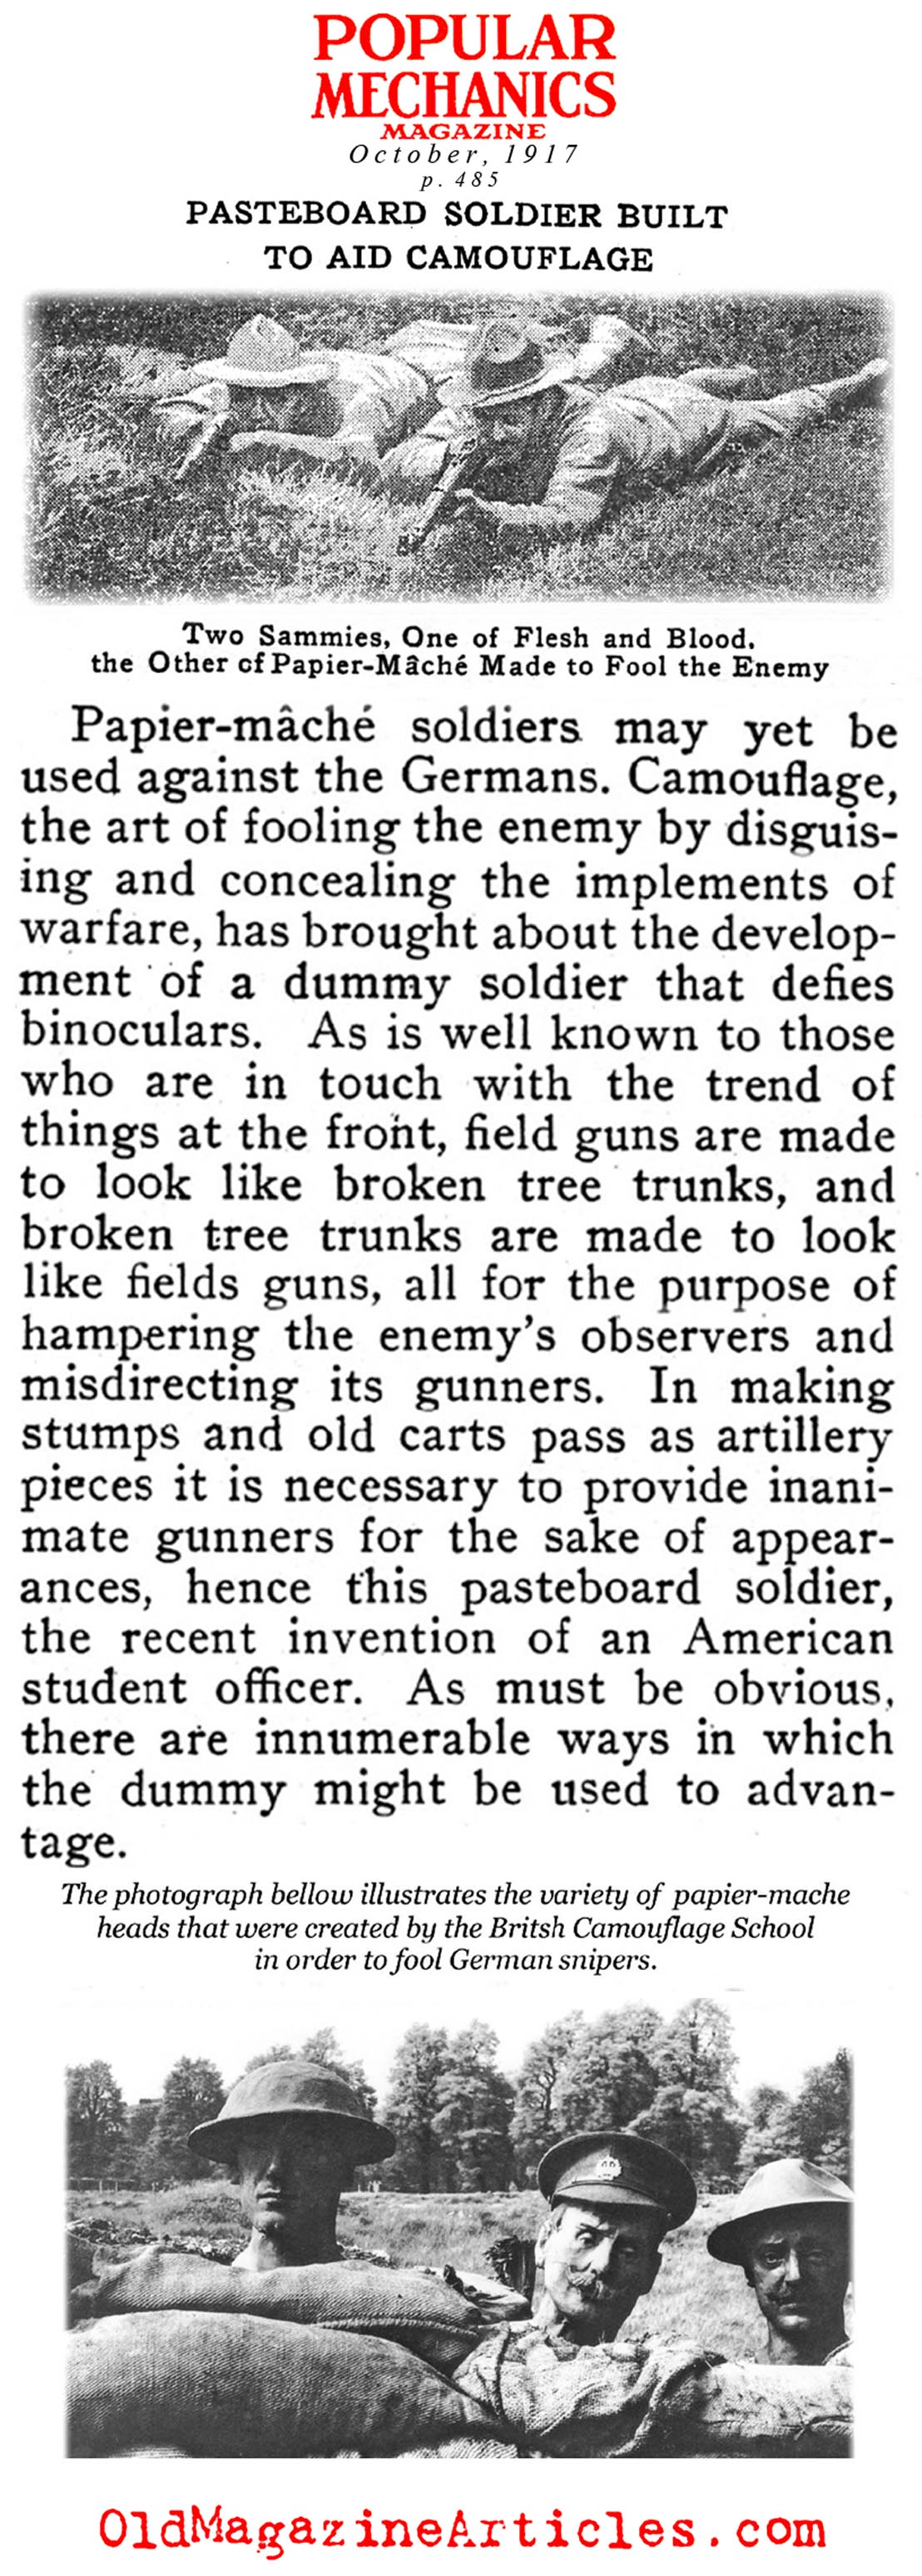 Papier-Mache Used to Deceive German Snipers (Popular Mechanics, 1917)